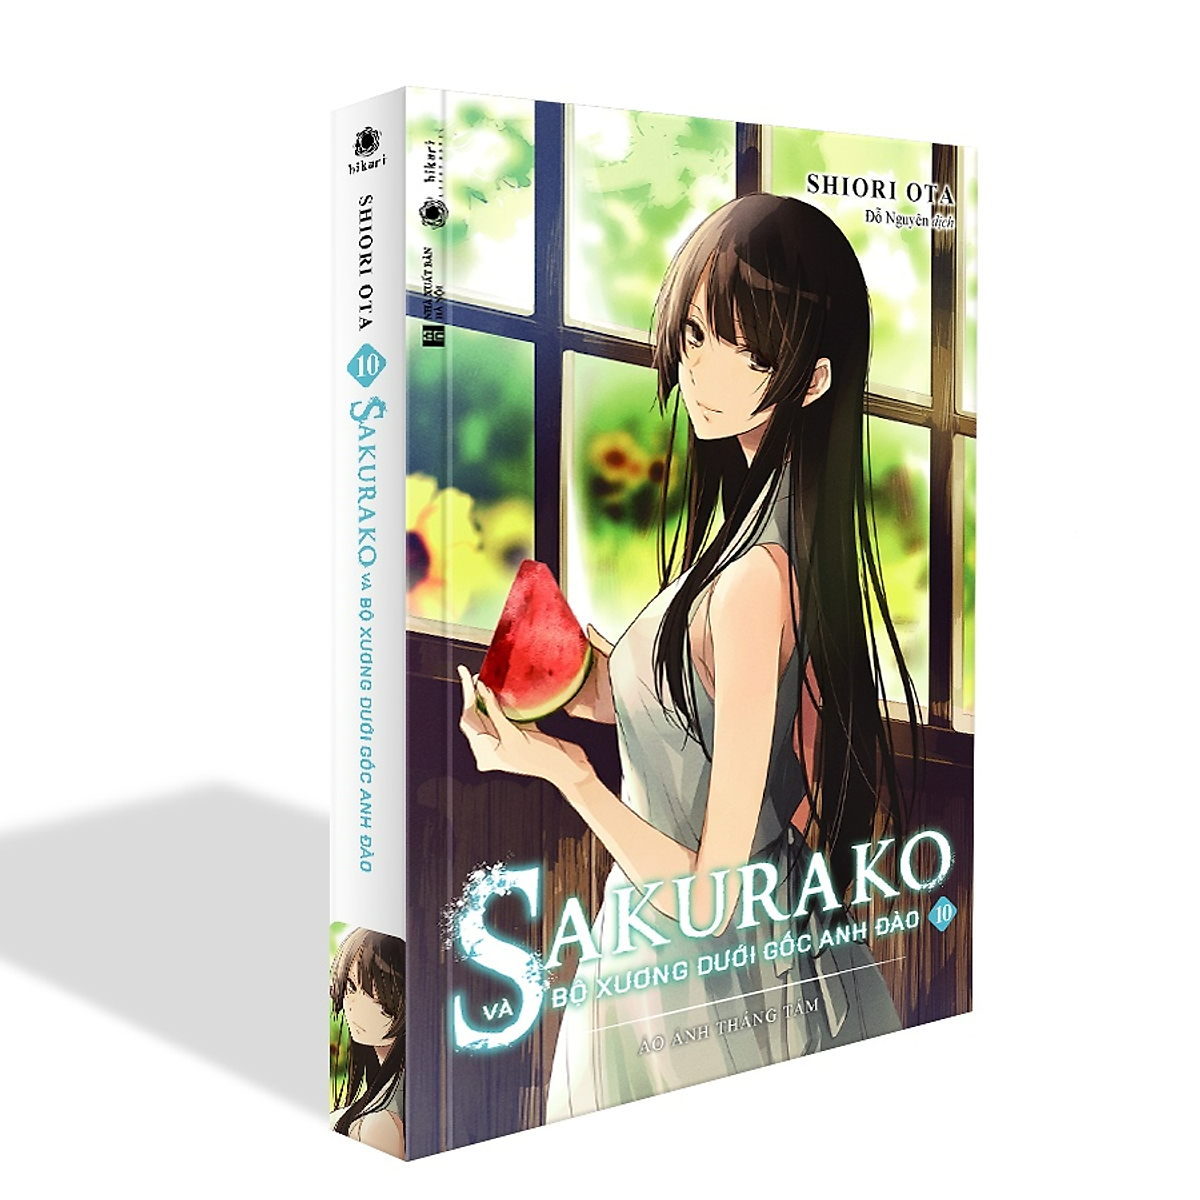 Hình ảnh Sakurako Và Bộ Xương Dưới Gốc Anh Đào - Tập 10